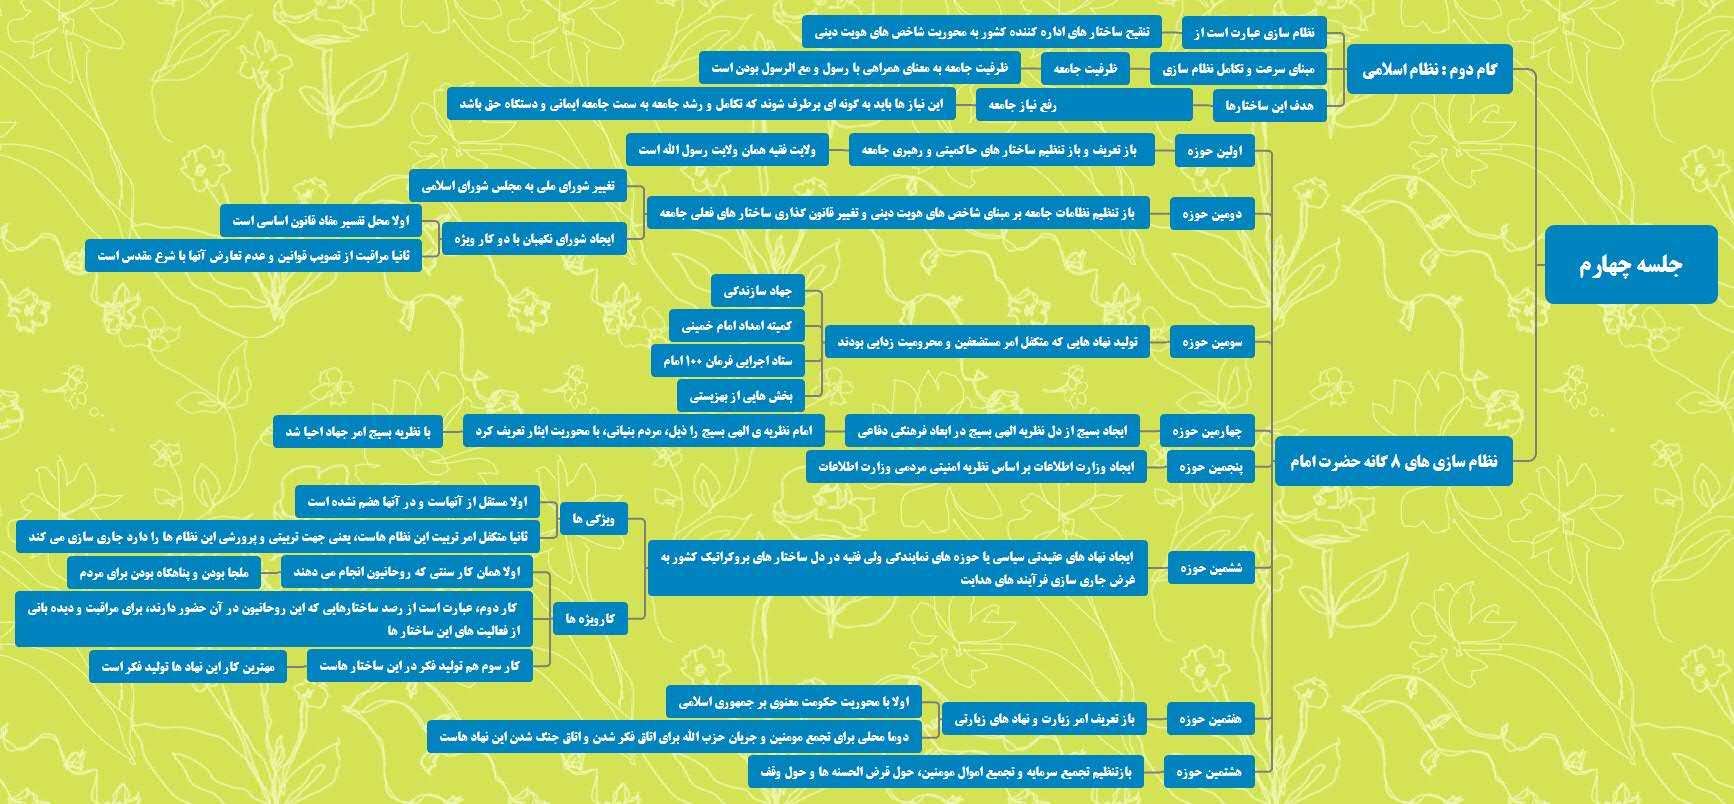 نقشه ذهنی جلسه چهارم دوره جهت حرکت انقلاب اسلامی